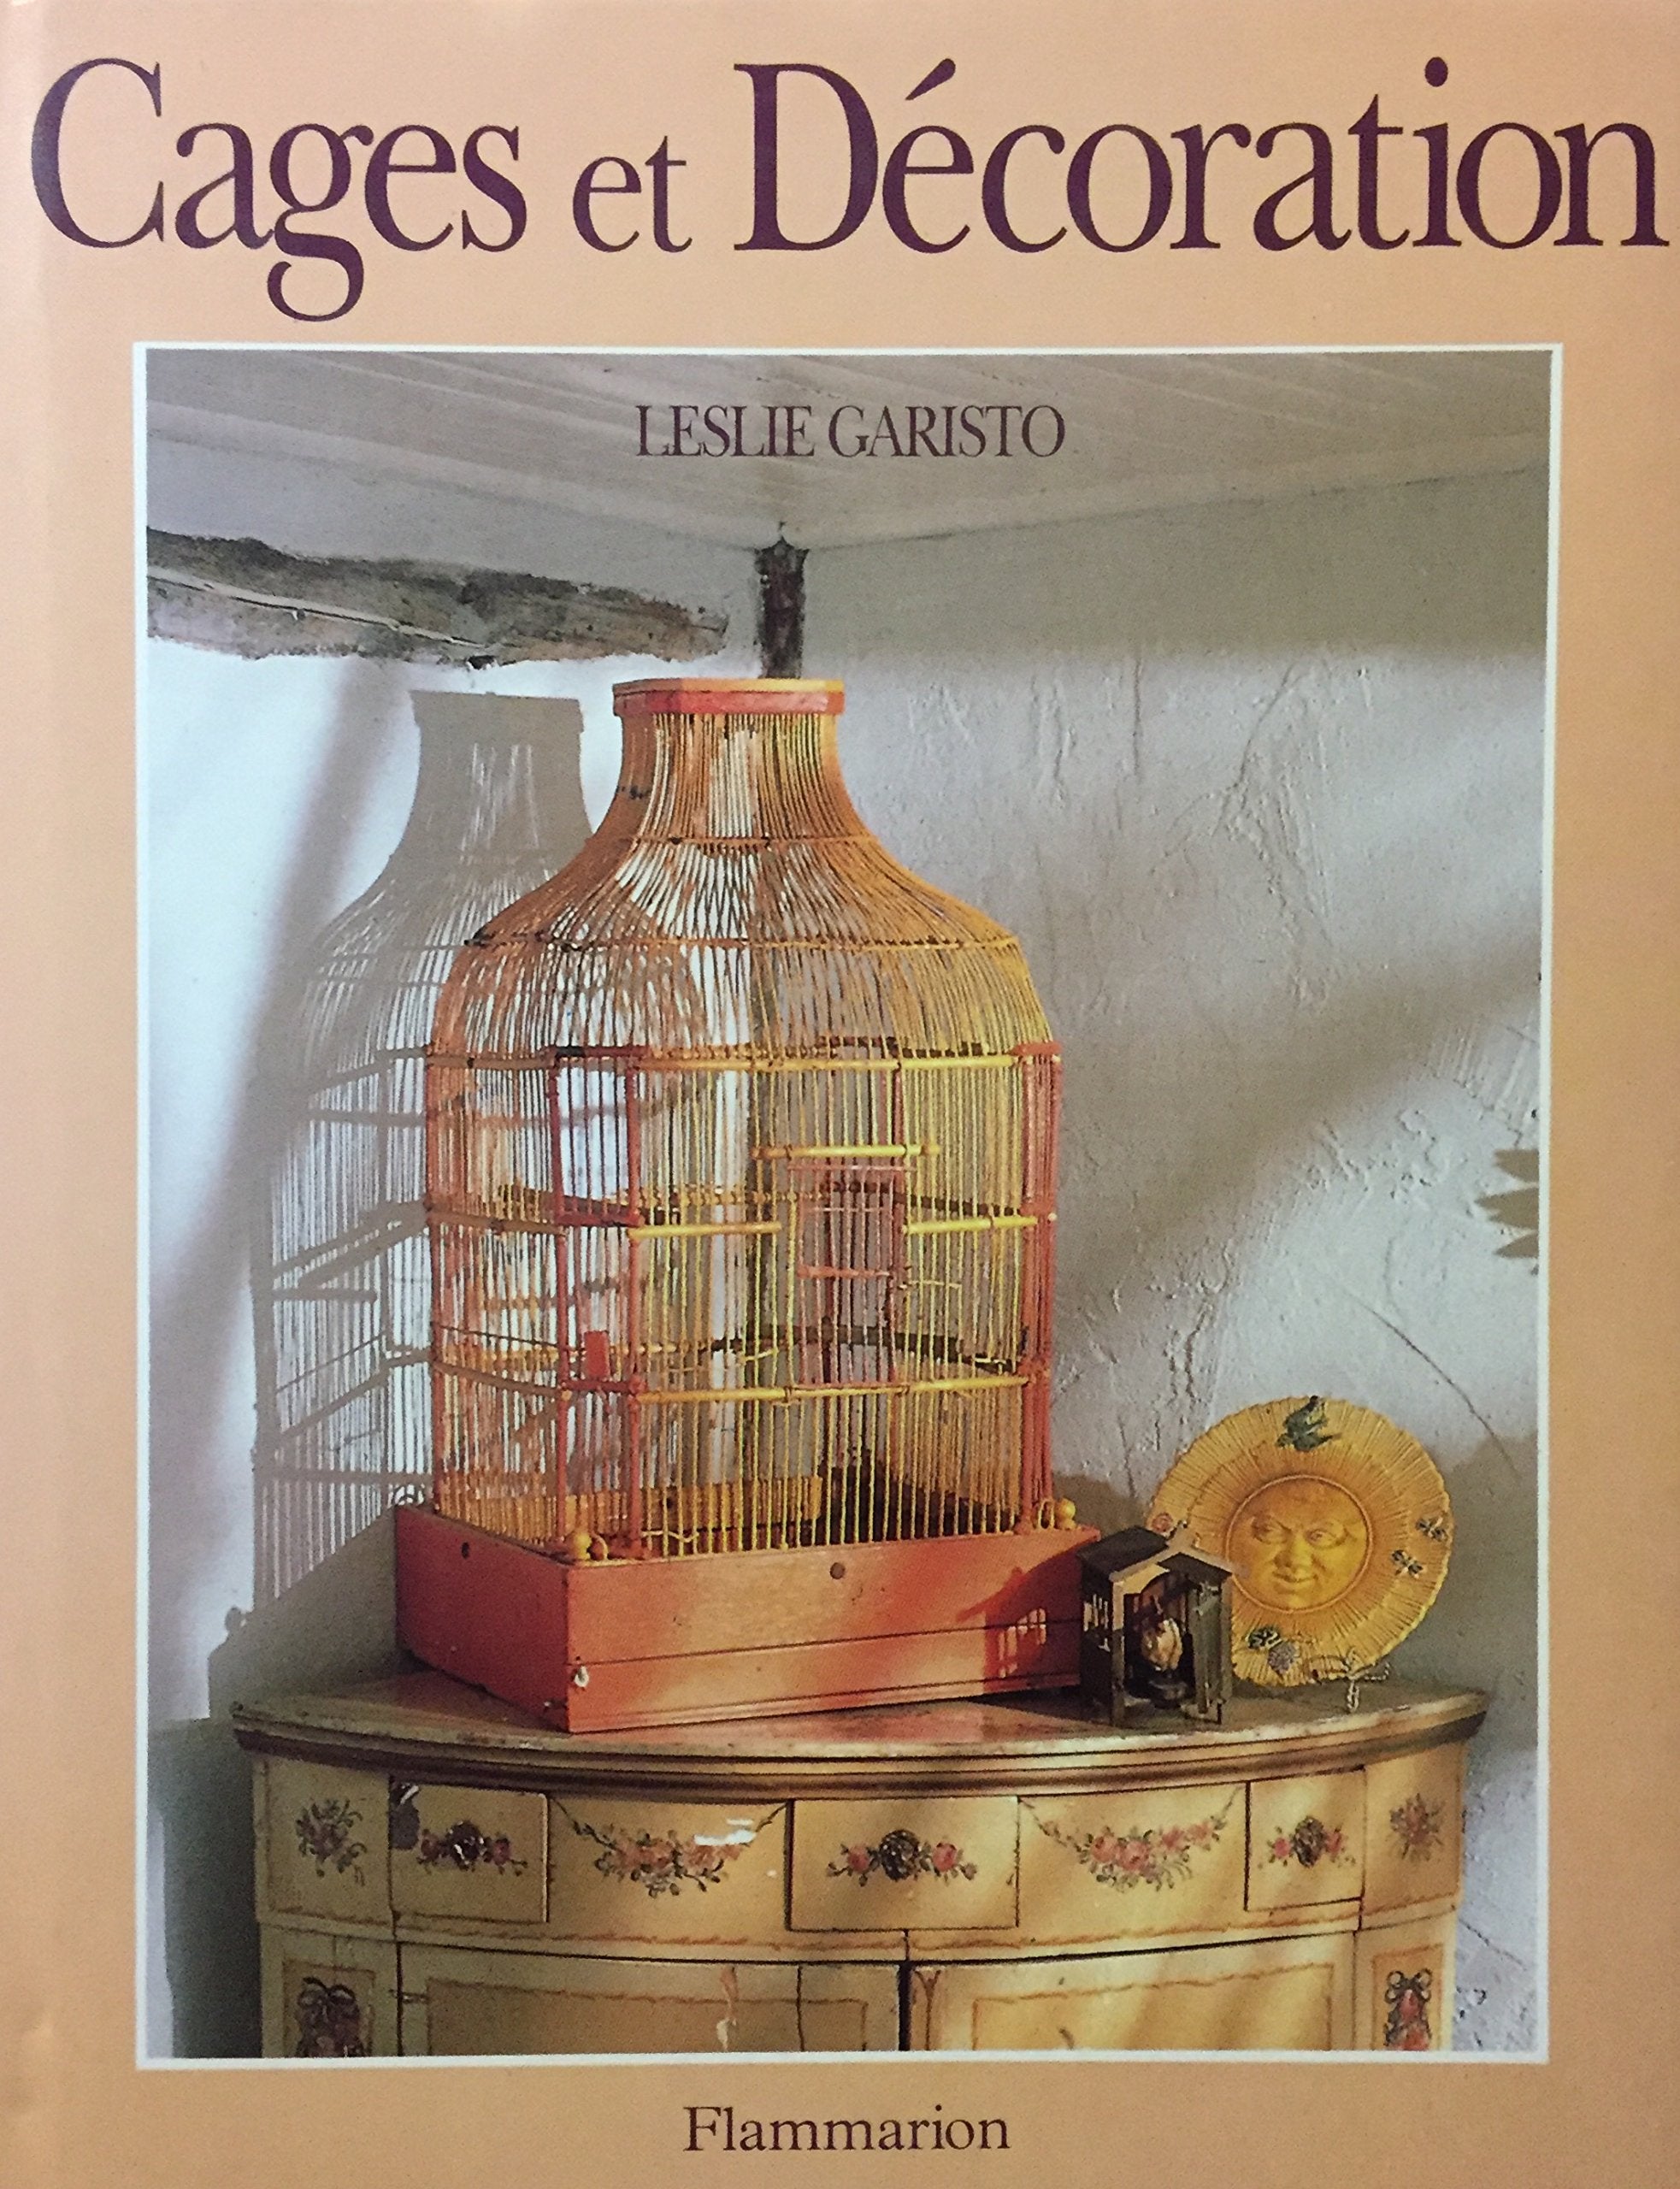 Livre ISBN 2082019306 Cages et décoration (Leslie Garisto)